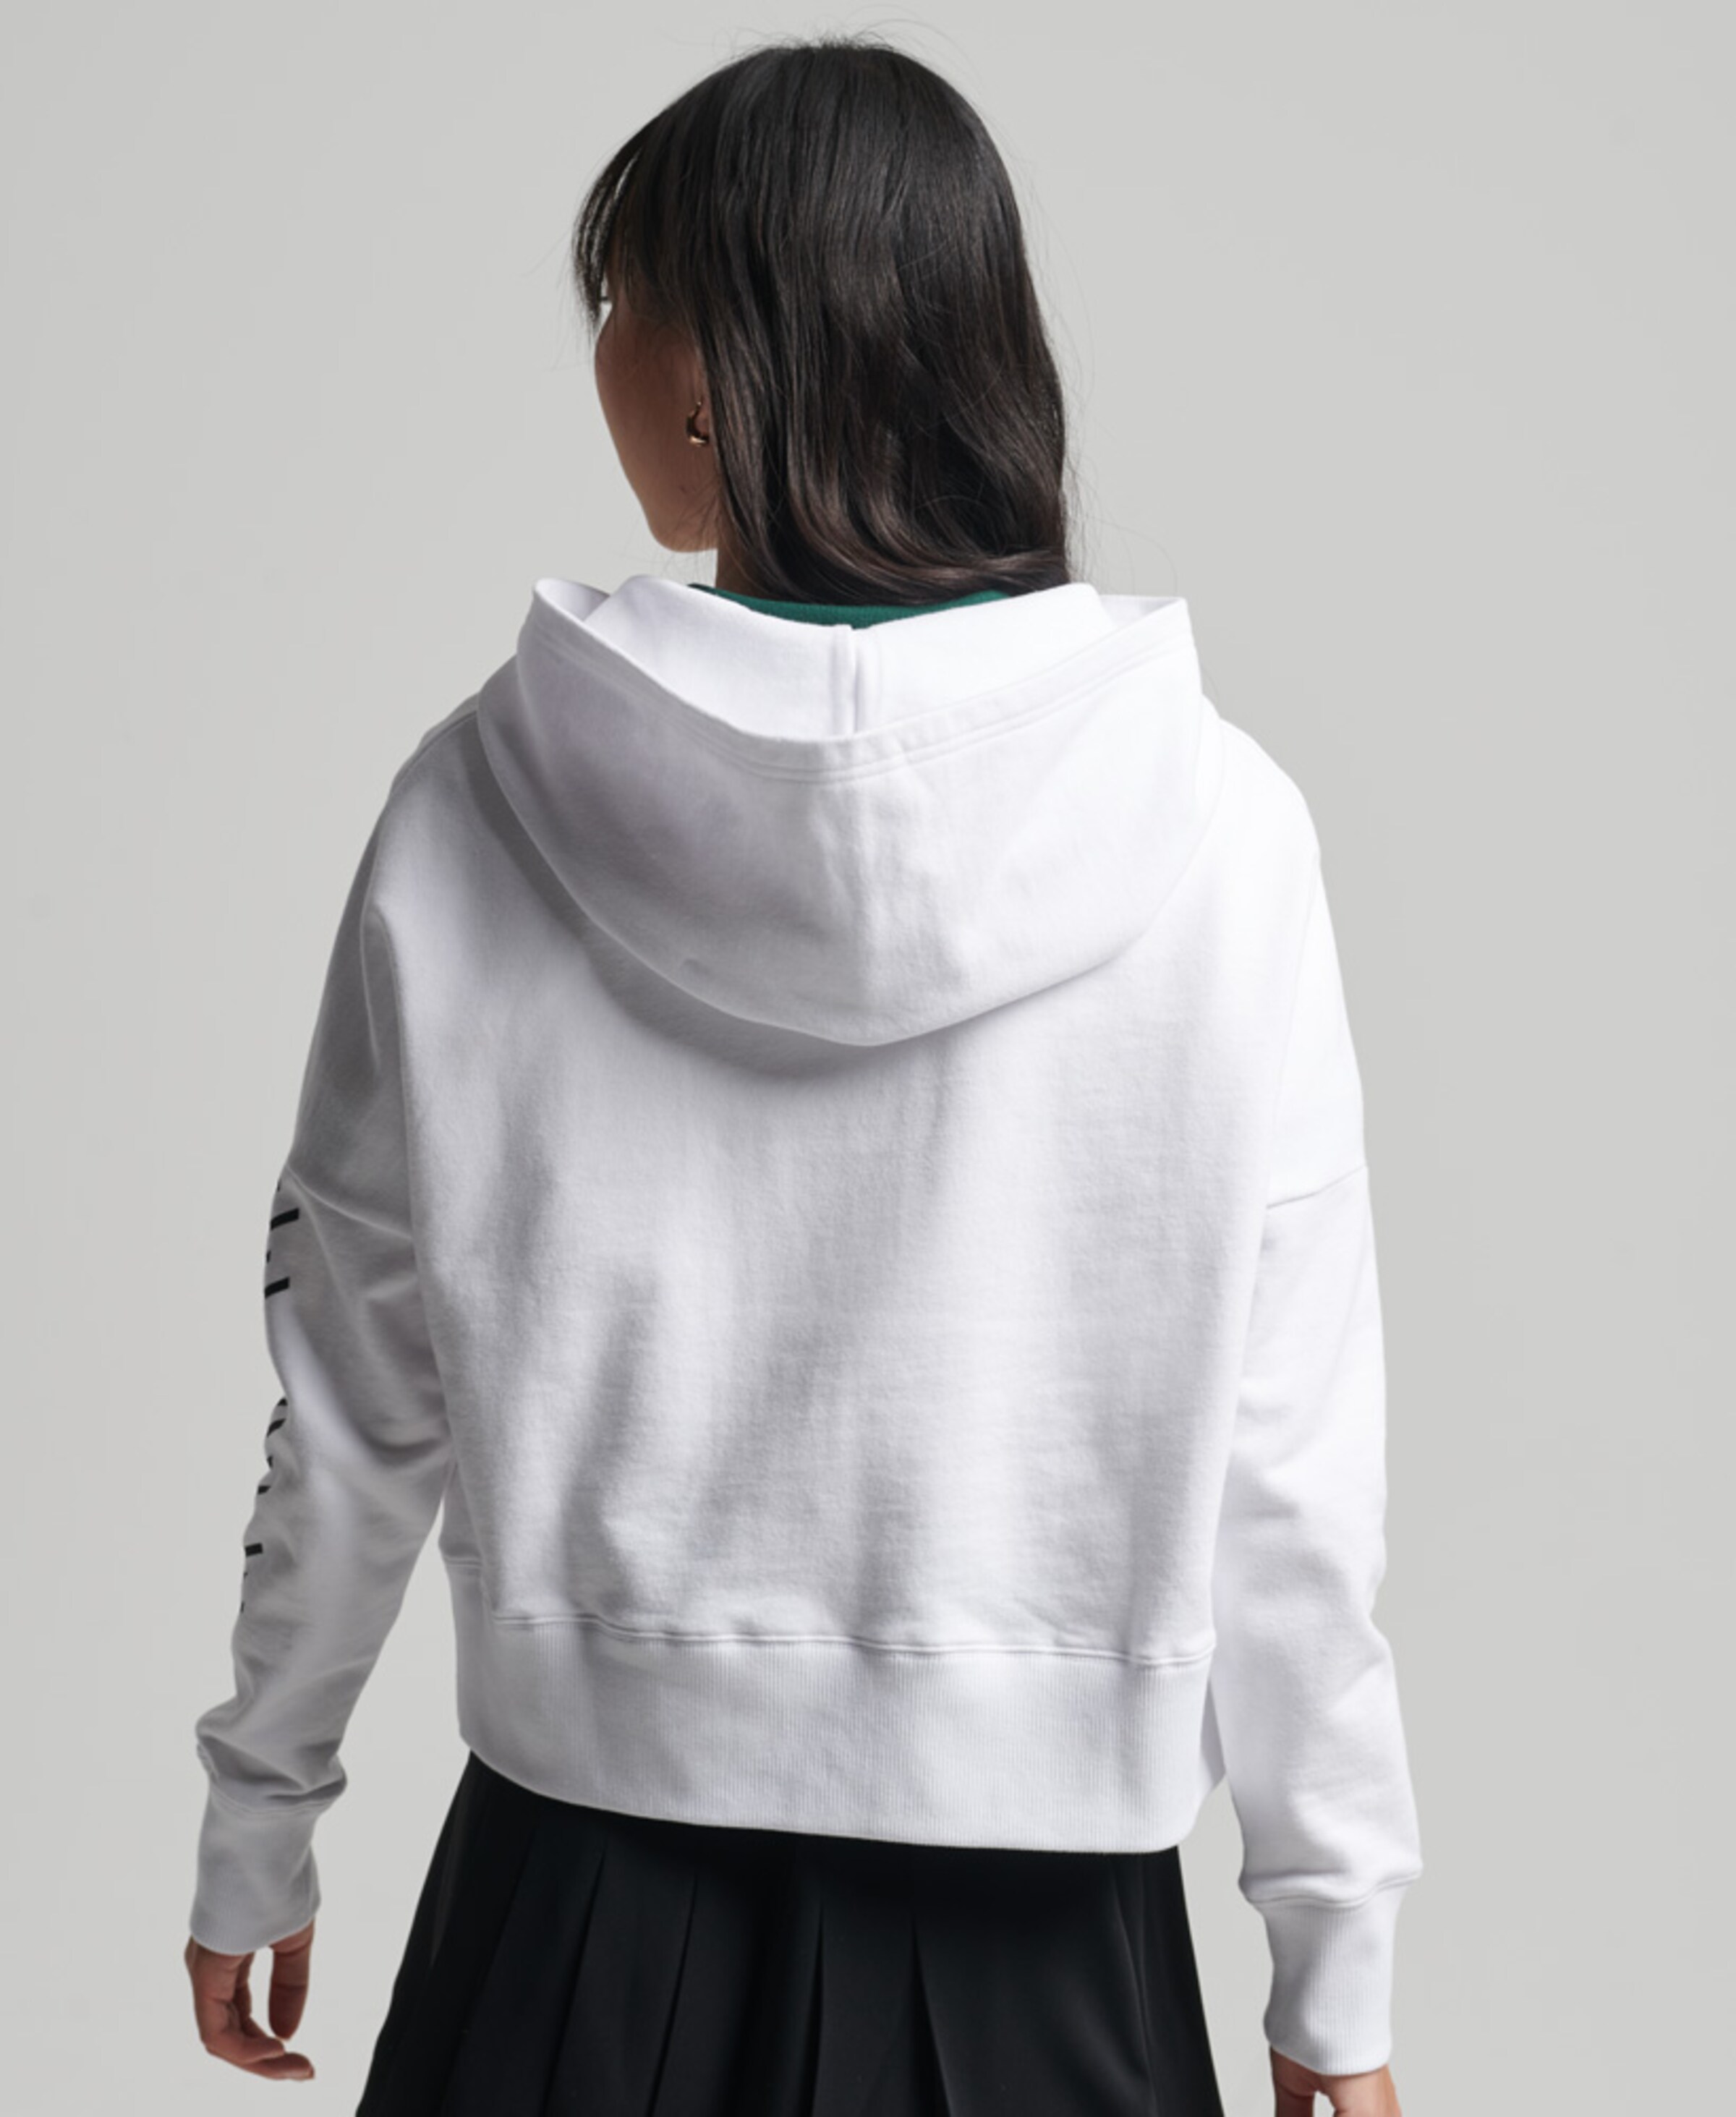 Frauen Sportarten Superdry Sportsweatshirt 'Gerader Code Core' in Weiß - CN93670